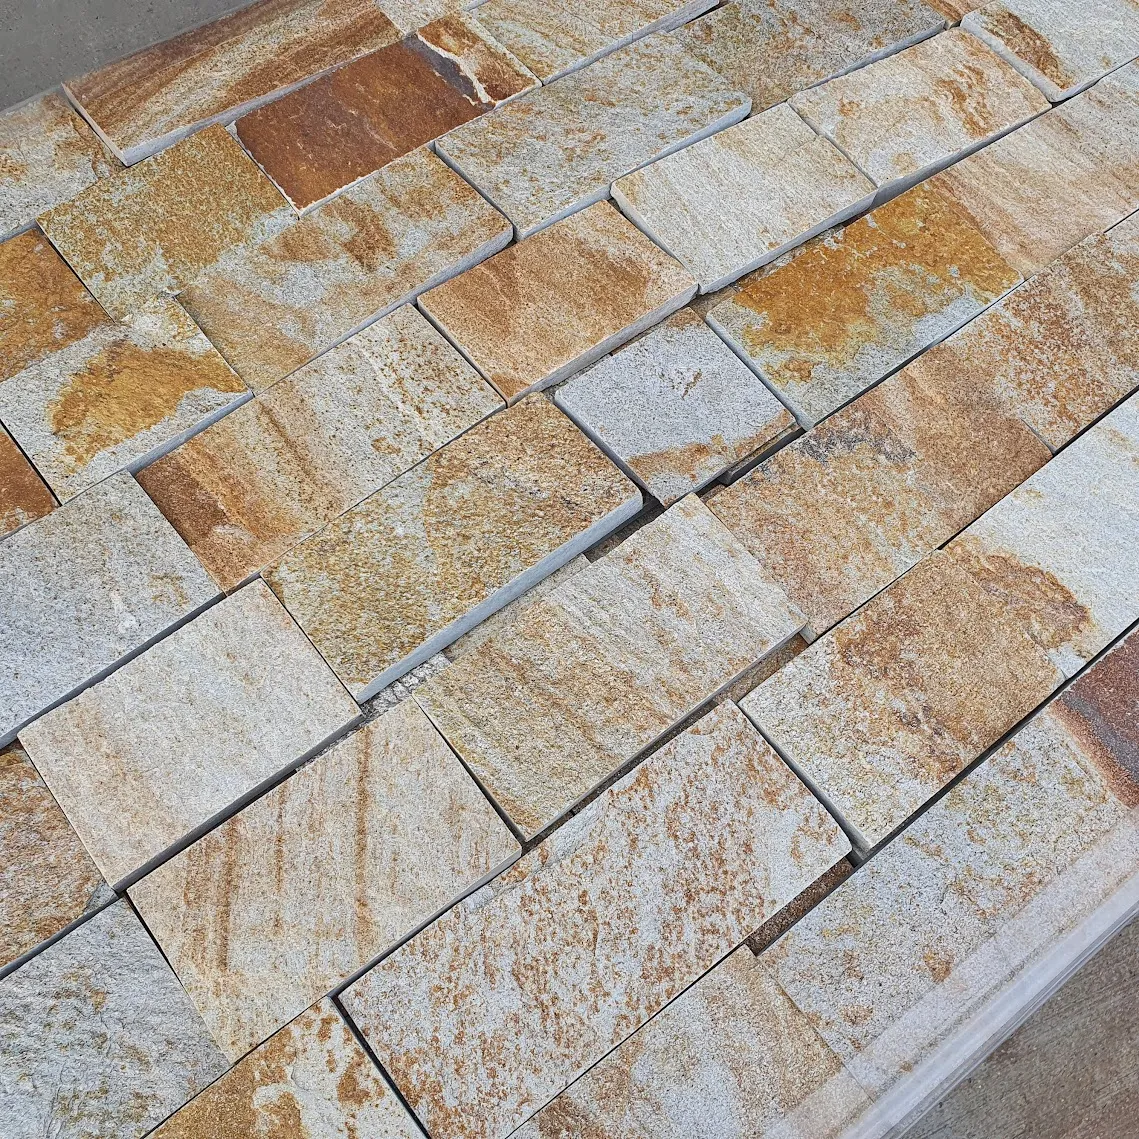 Sandy-gold gneiss machine-cut tiles 4